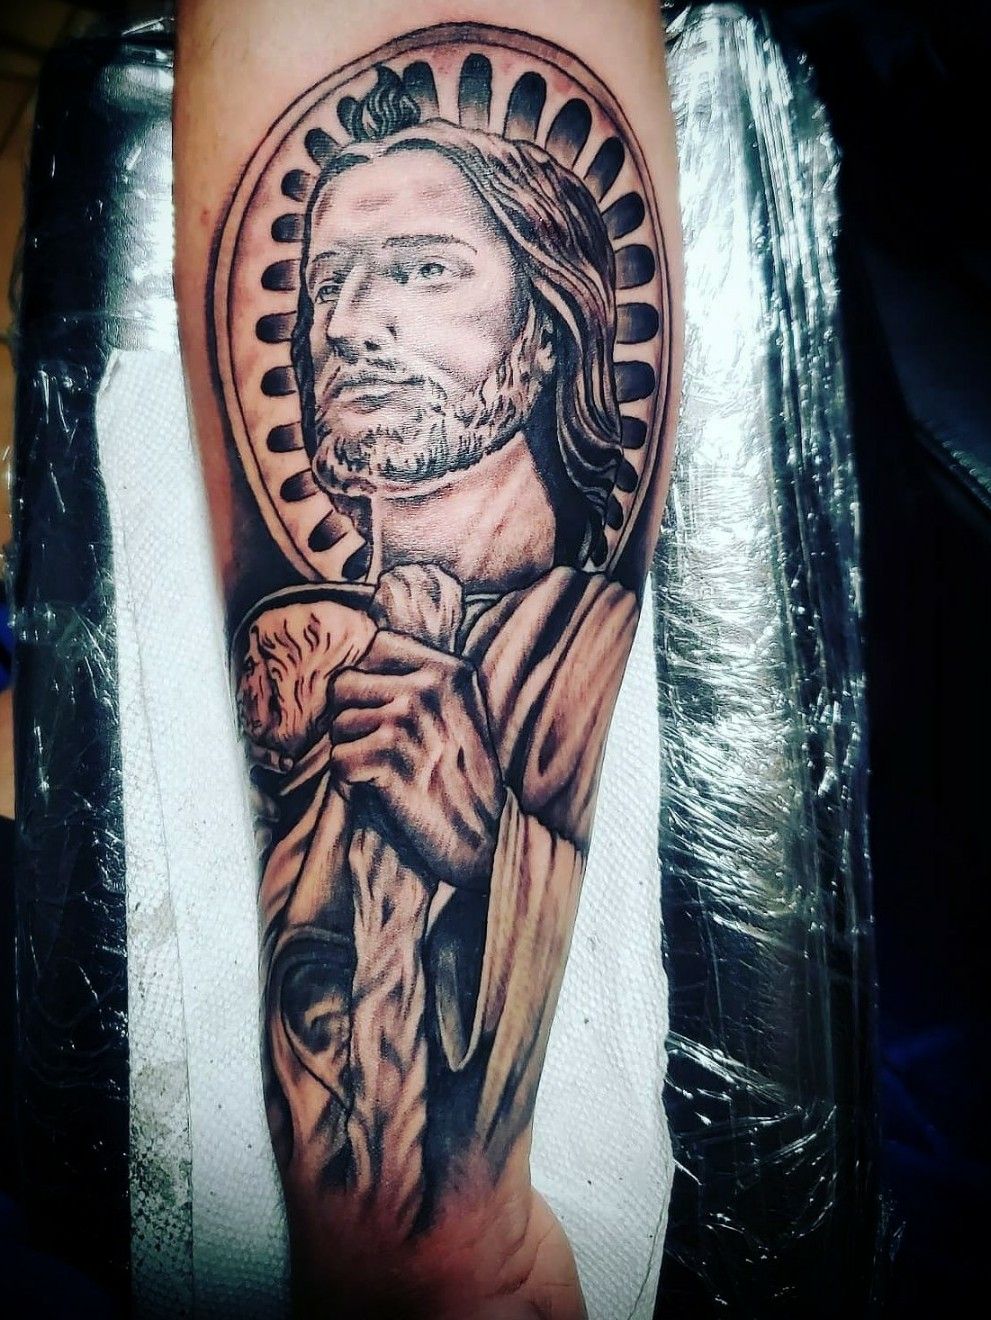 How Long Did That Tattoo Take?” ⏰ #saintjudetattoo #tattooideas #tat... |  TikTok